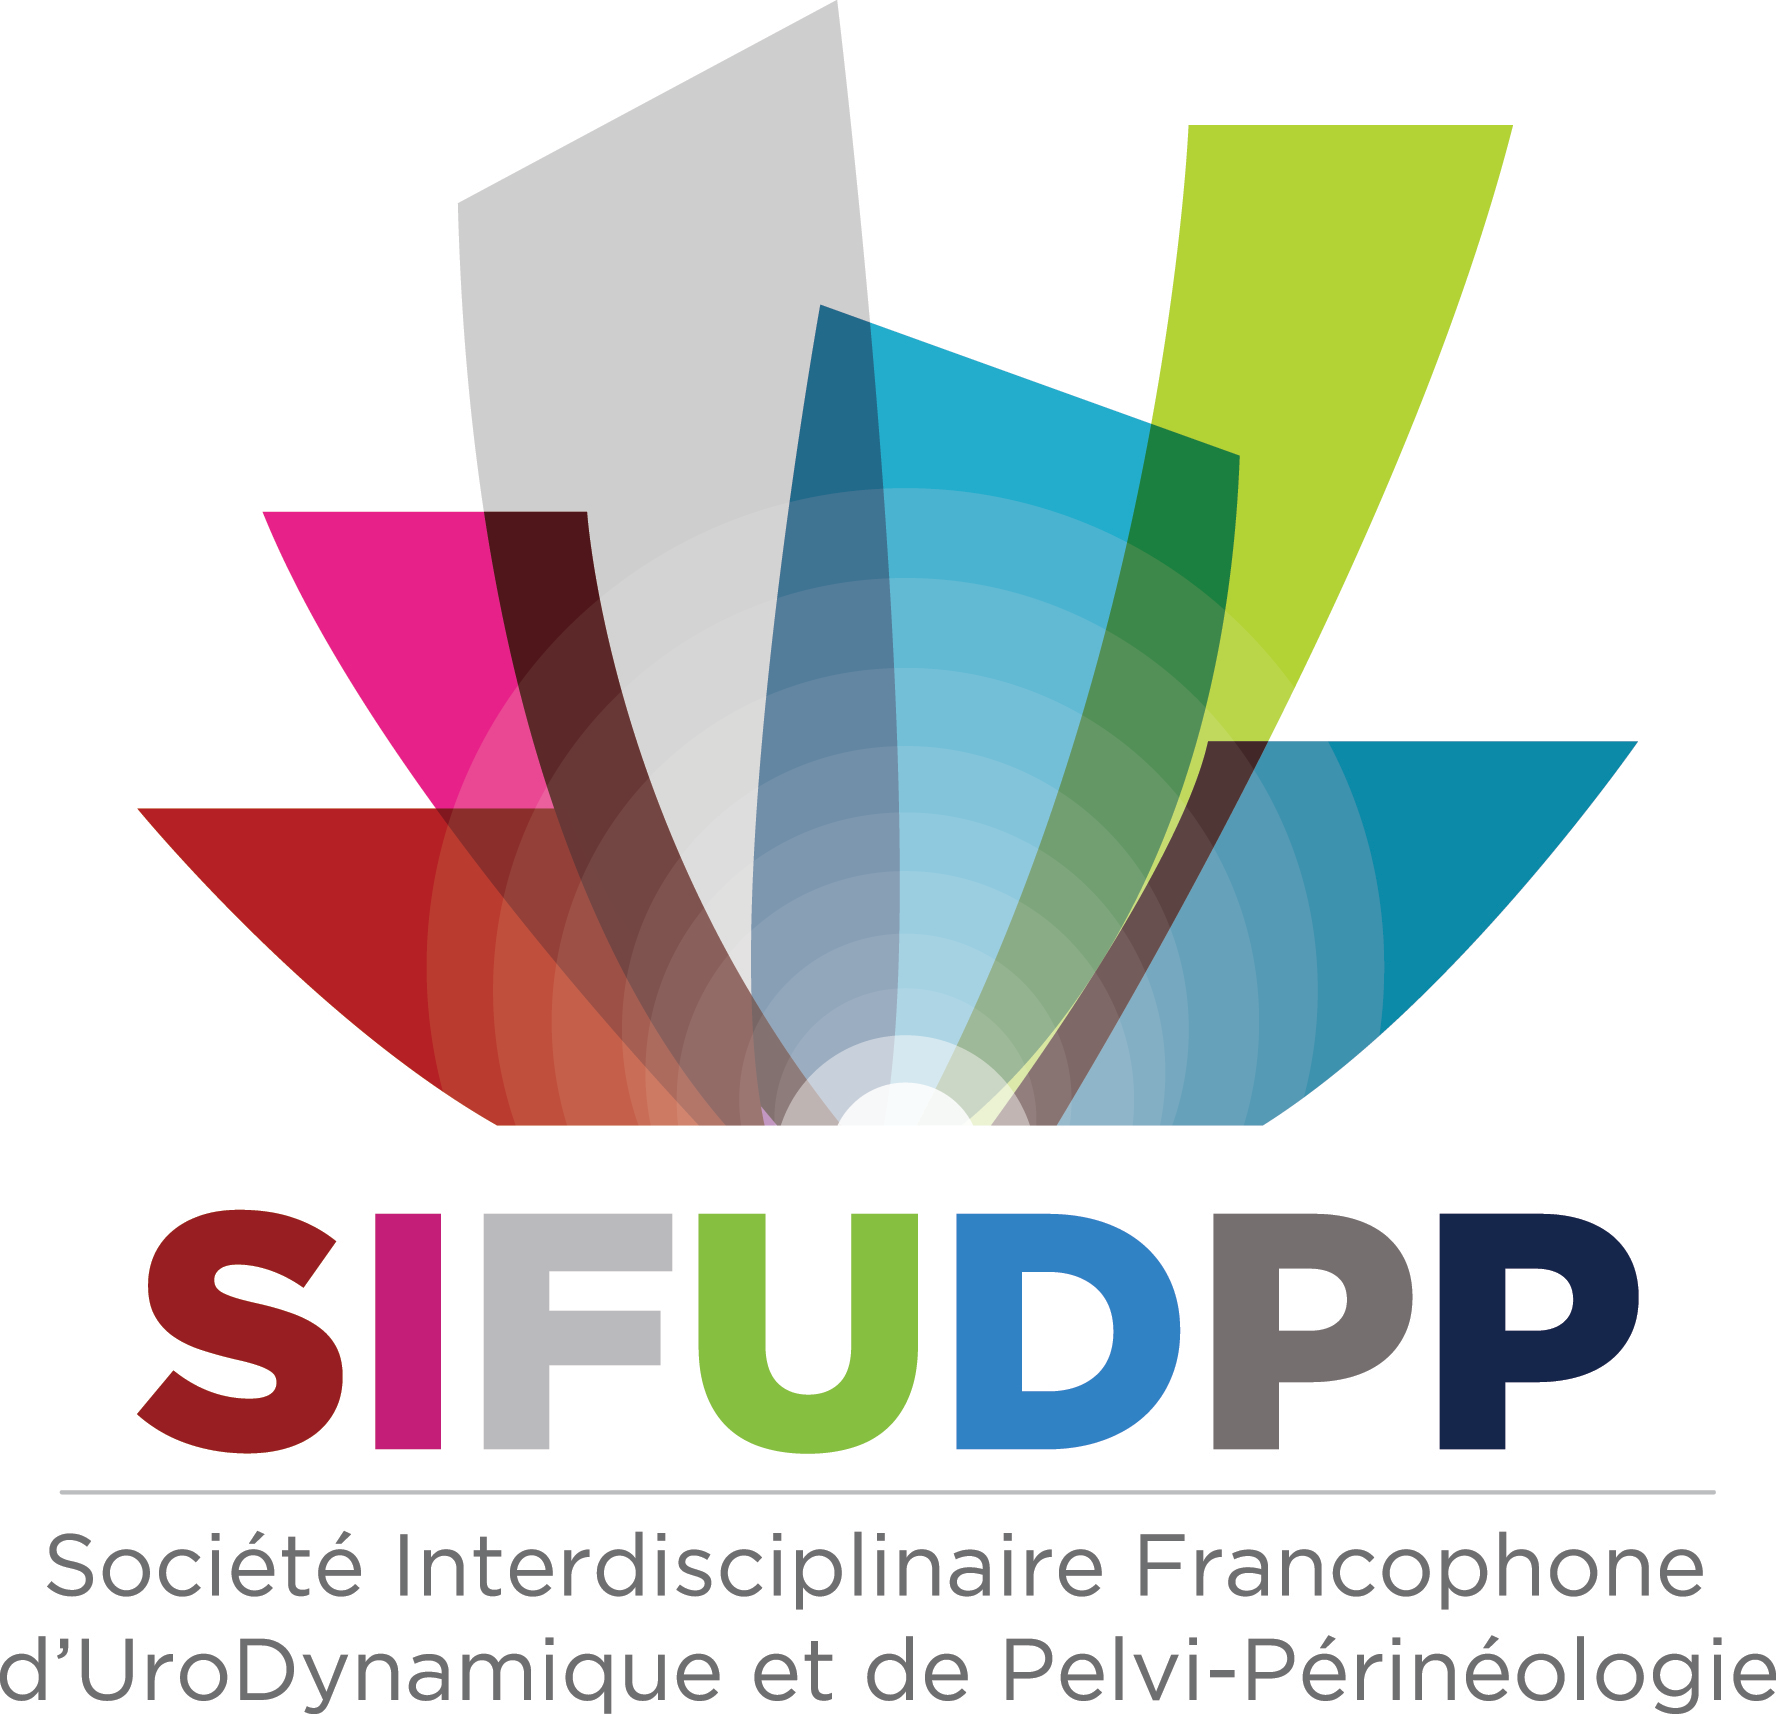 SIFUD-PP La Baule 2015 : ATELIER 3 - Kinésithérapie et dysurie chez le patient neurologique